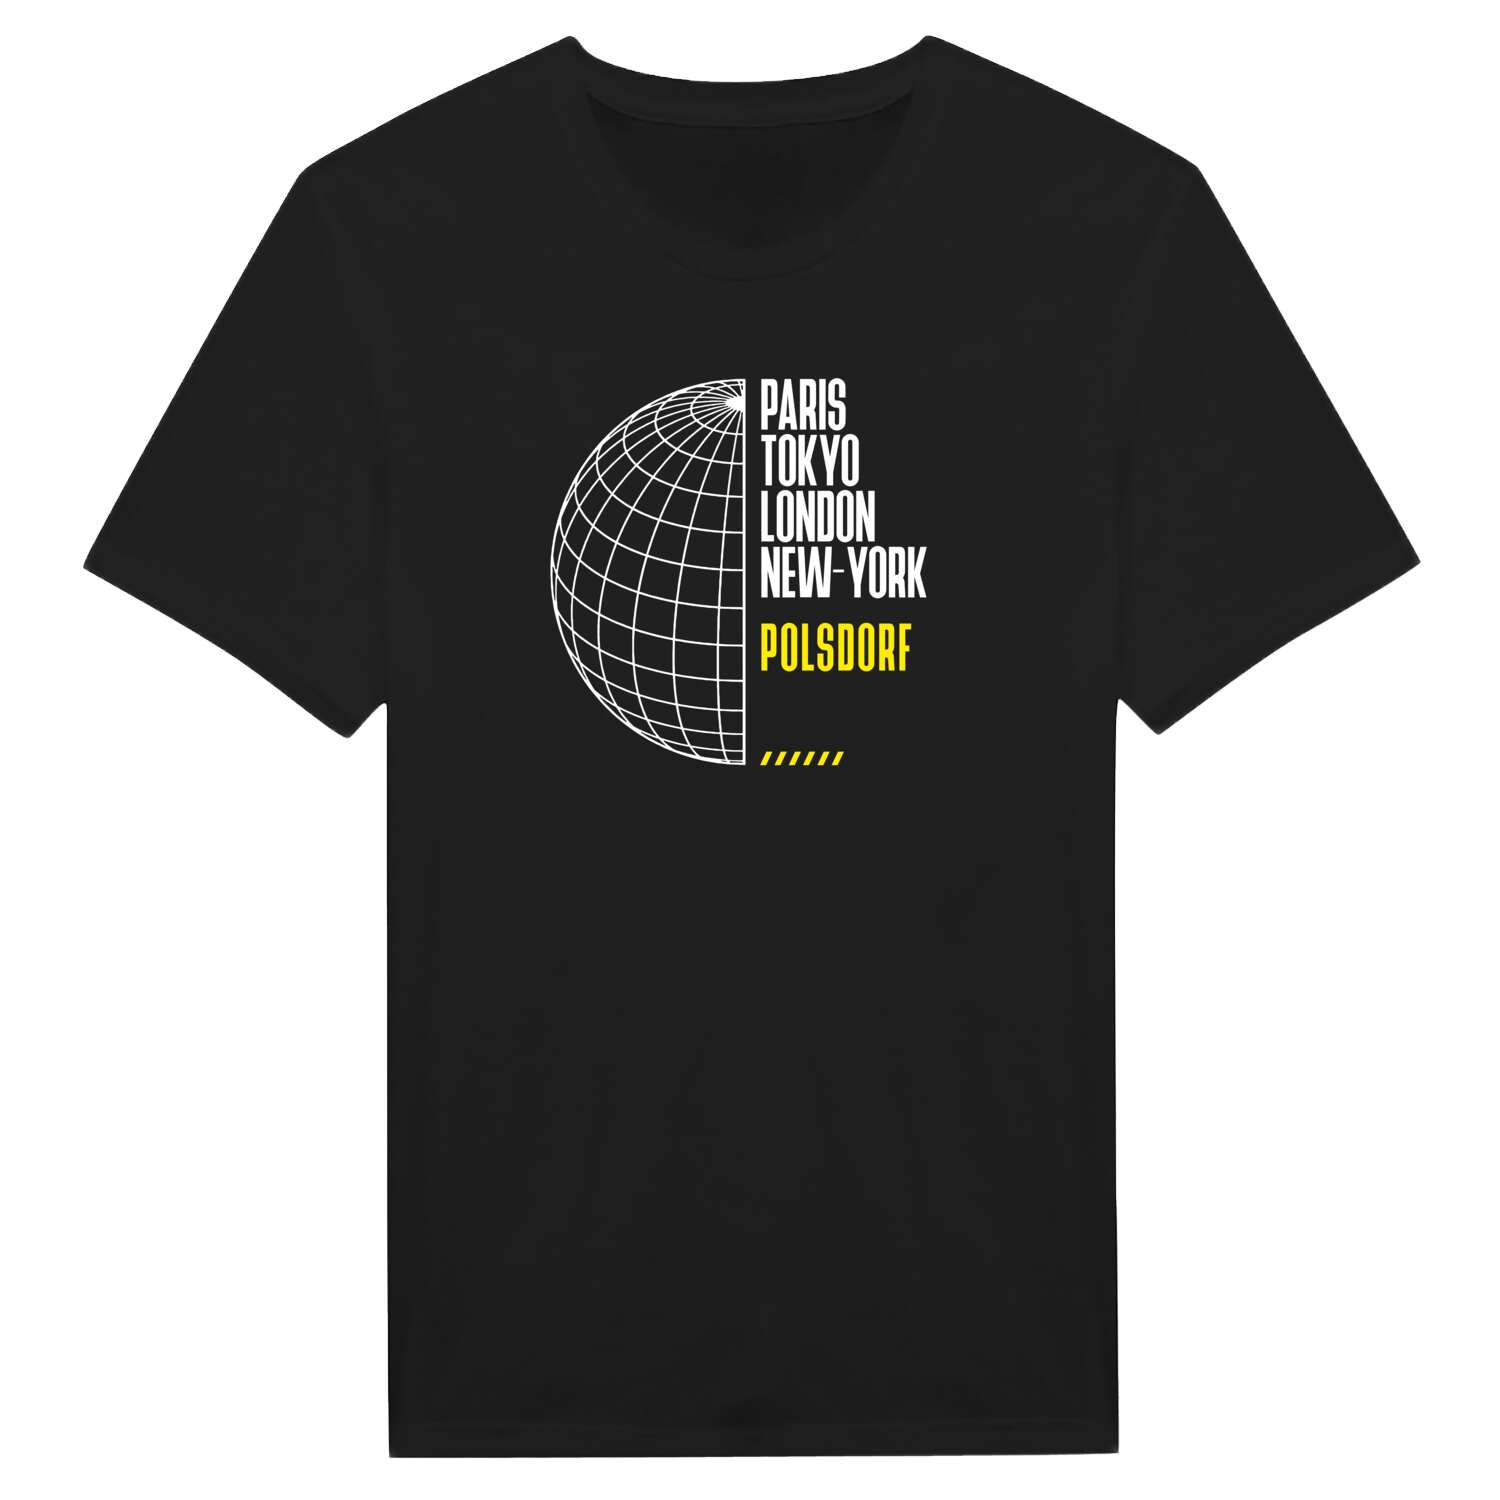 Polsdorf T-Shirt »Paris Tokyo London«